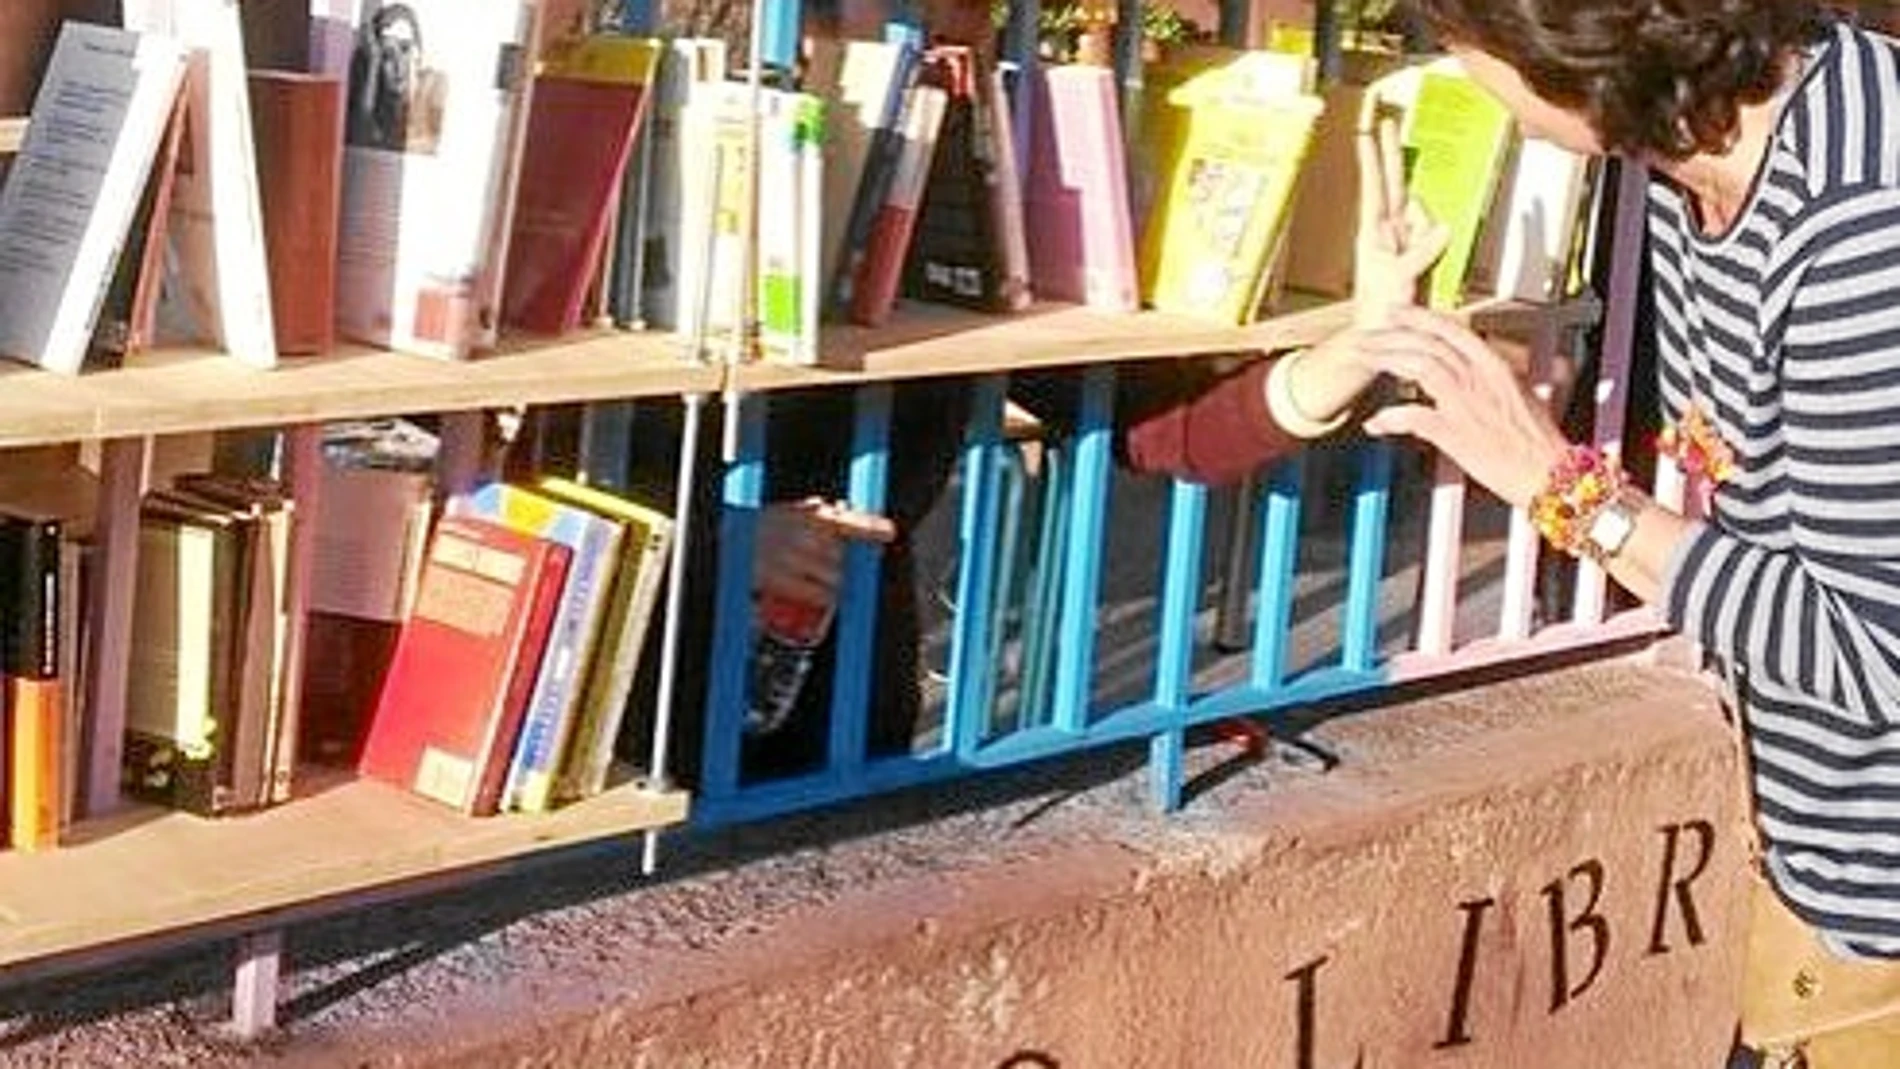 La falta de acceso a una biblioteca cercana, ha llevado a los vecinos de Fuencarral a organizar su propia «biblioverja» en la fachada de un centro social como forma de protesta